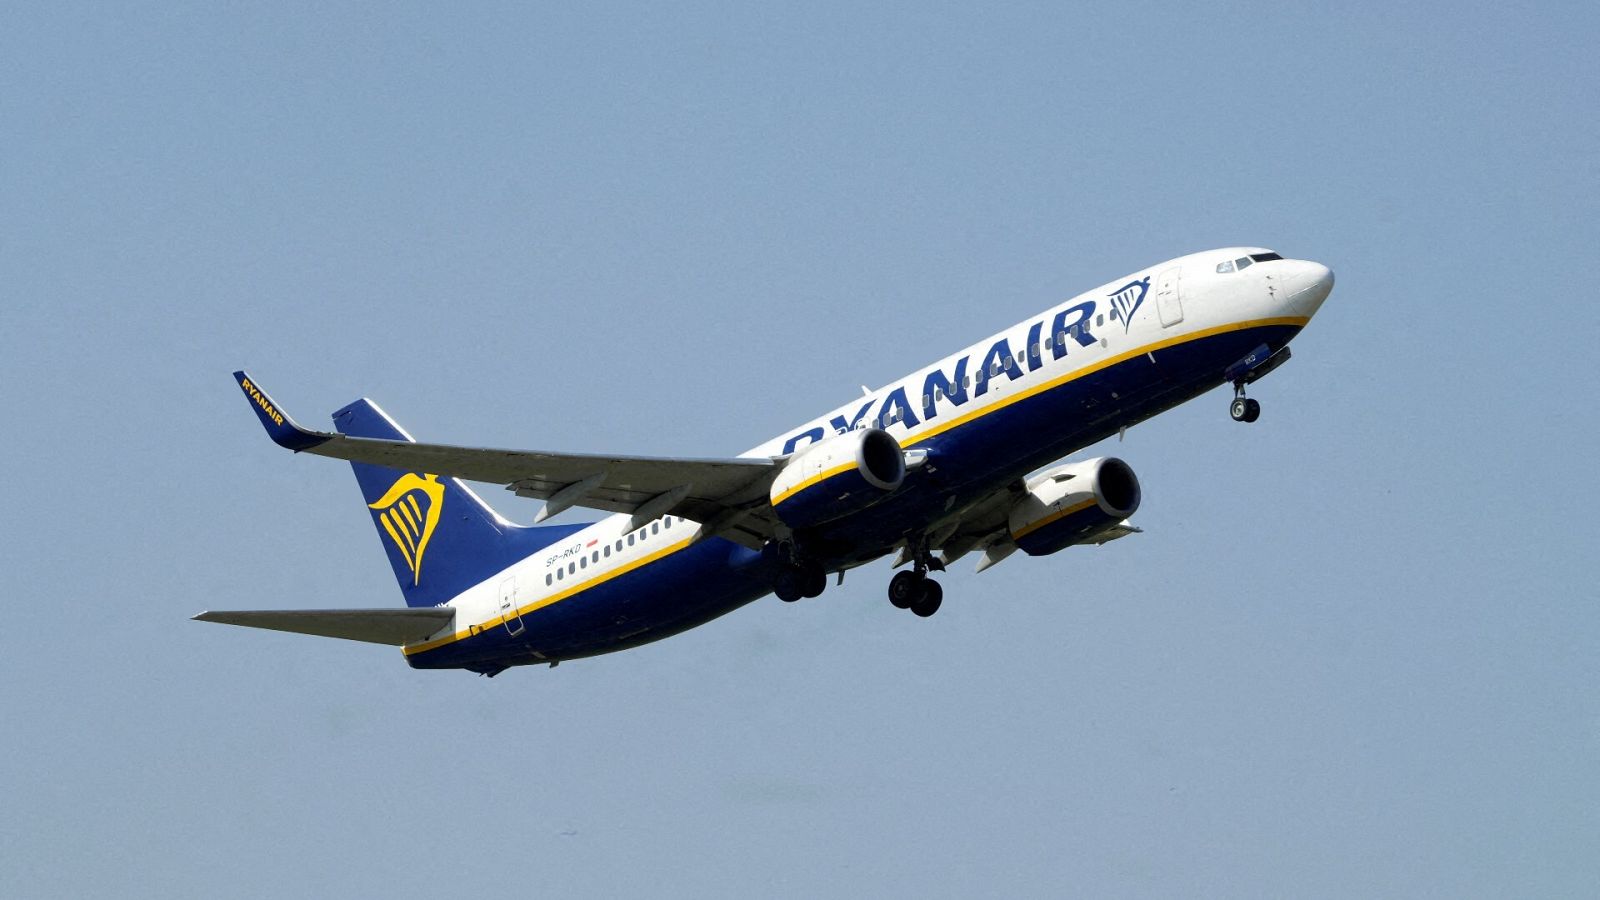 de tripulantes de Ryanair provoca 11 vuelos cancelados 51 retrasos este lunes